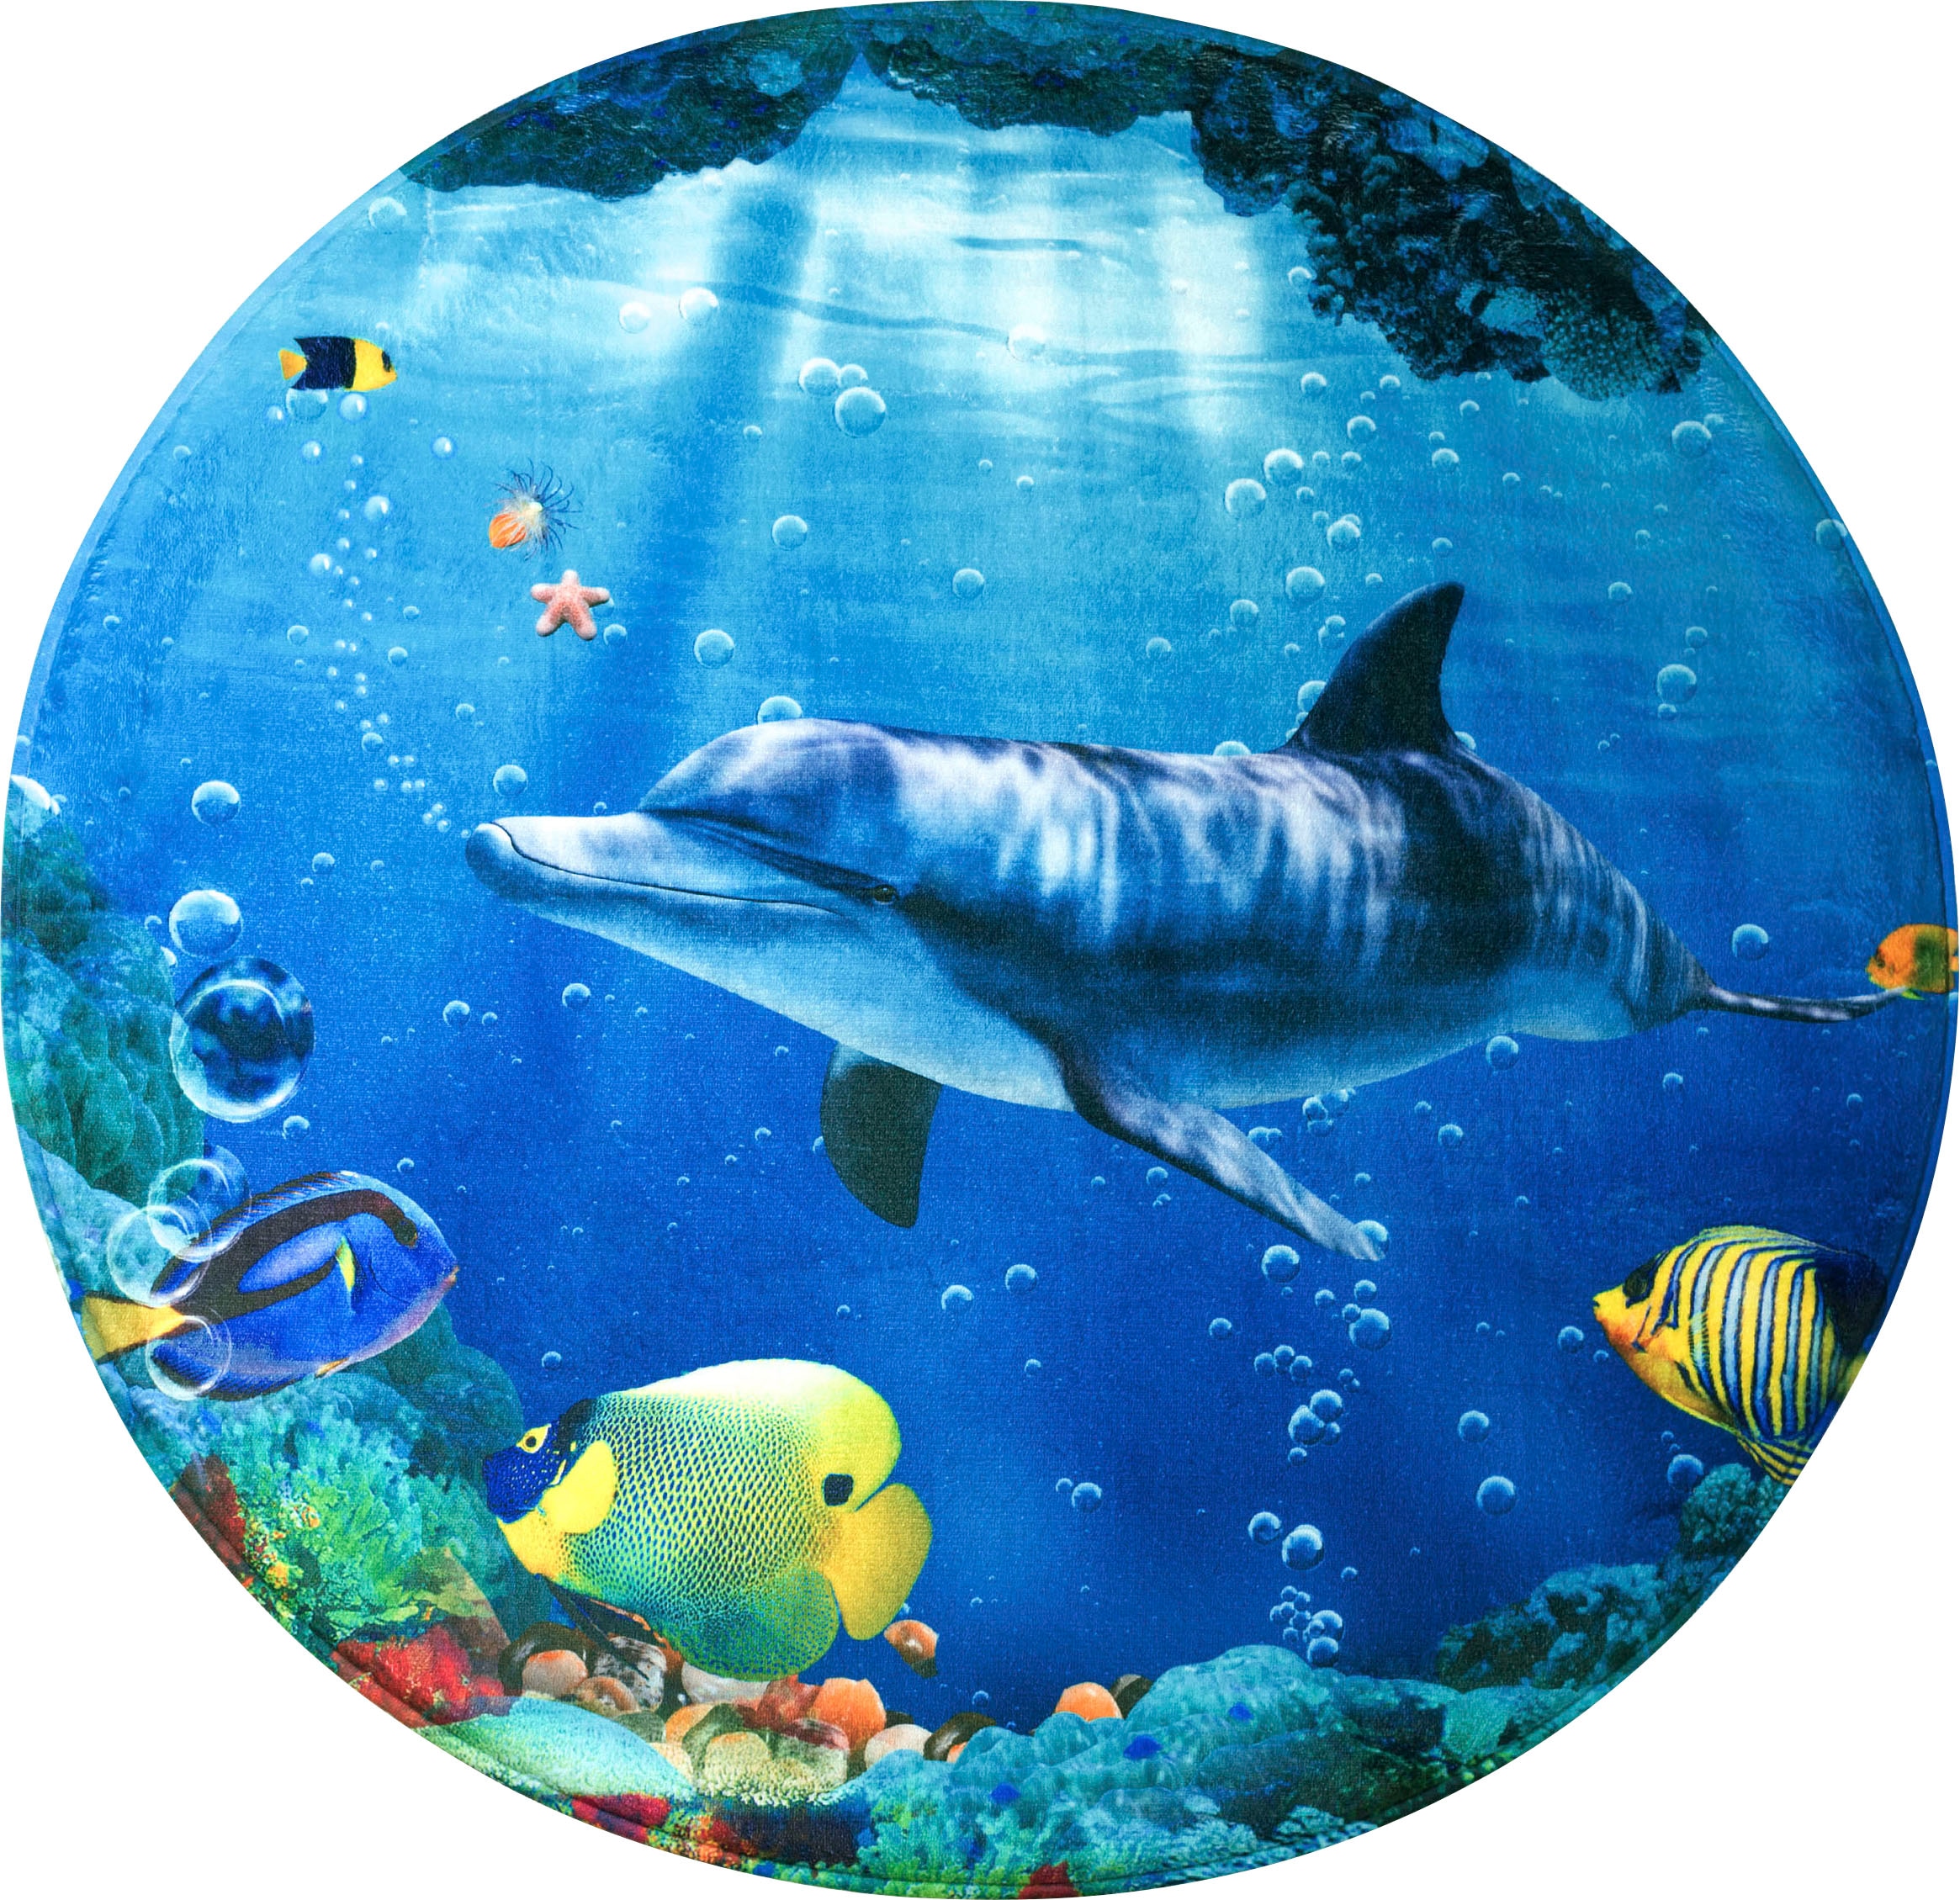 Sanilo Schaum-Badematte »Delphin Korallen«, Höhe 15 mm, Memory Schaum-rutschhemmend beschichtet, fußbodenheizungsgeeignet-schnell trocknend-strapazierfähig, super weich, kräftige Farben, rutschhemmend, waschbar, Ø80cm